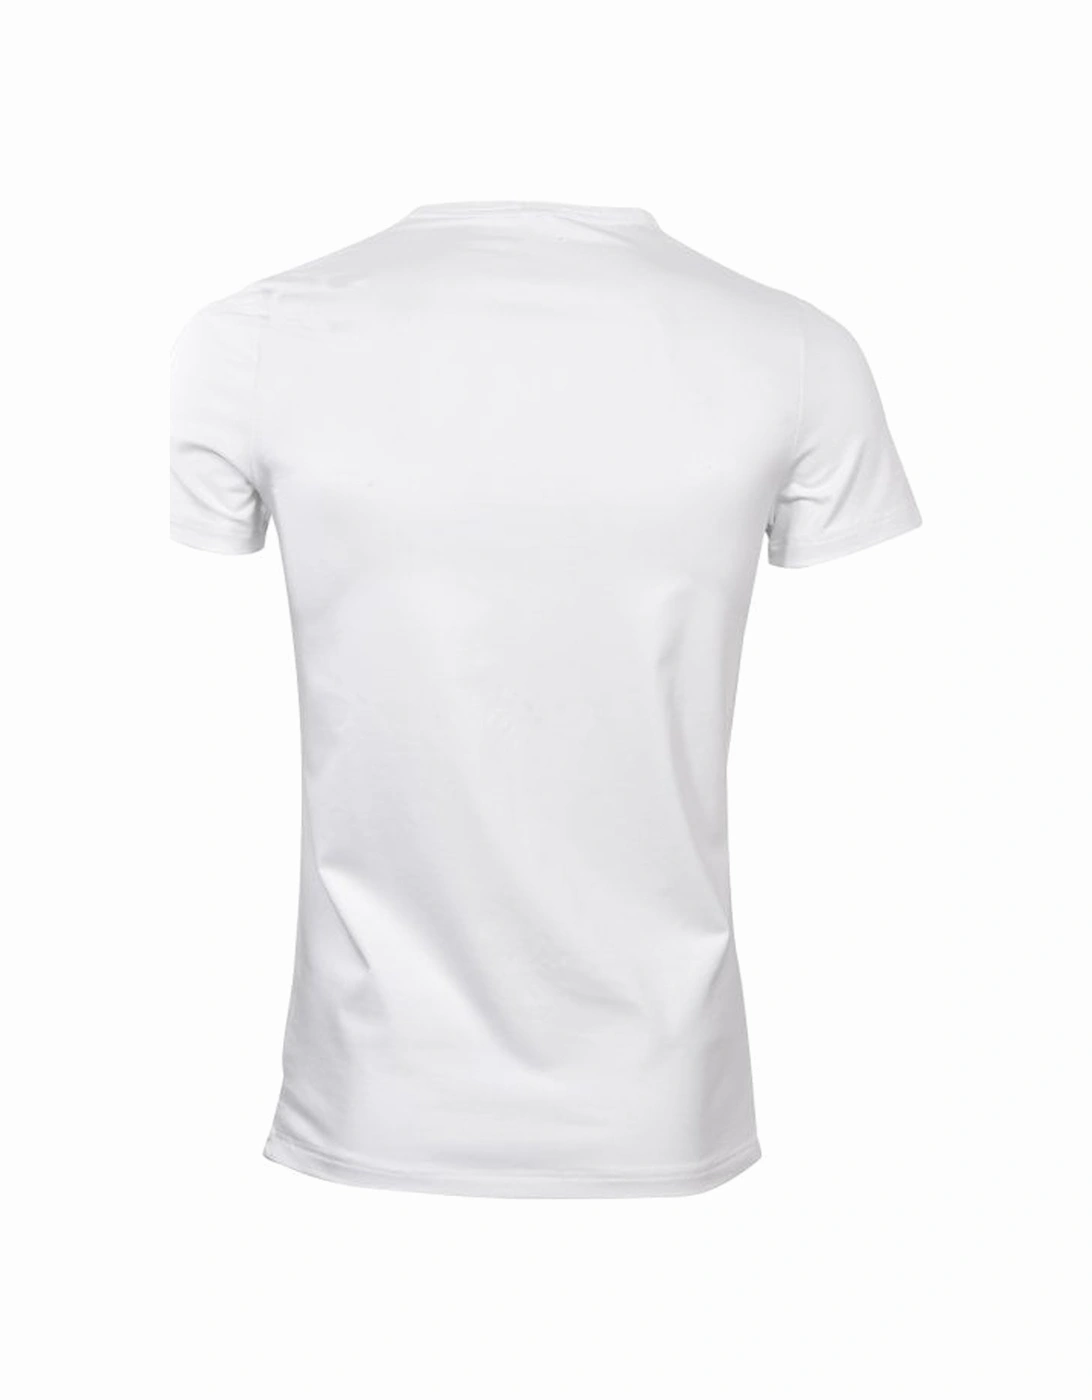 Cotton Modal V-Neck T-Shirt, White